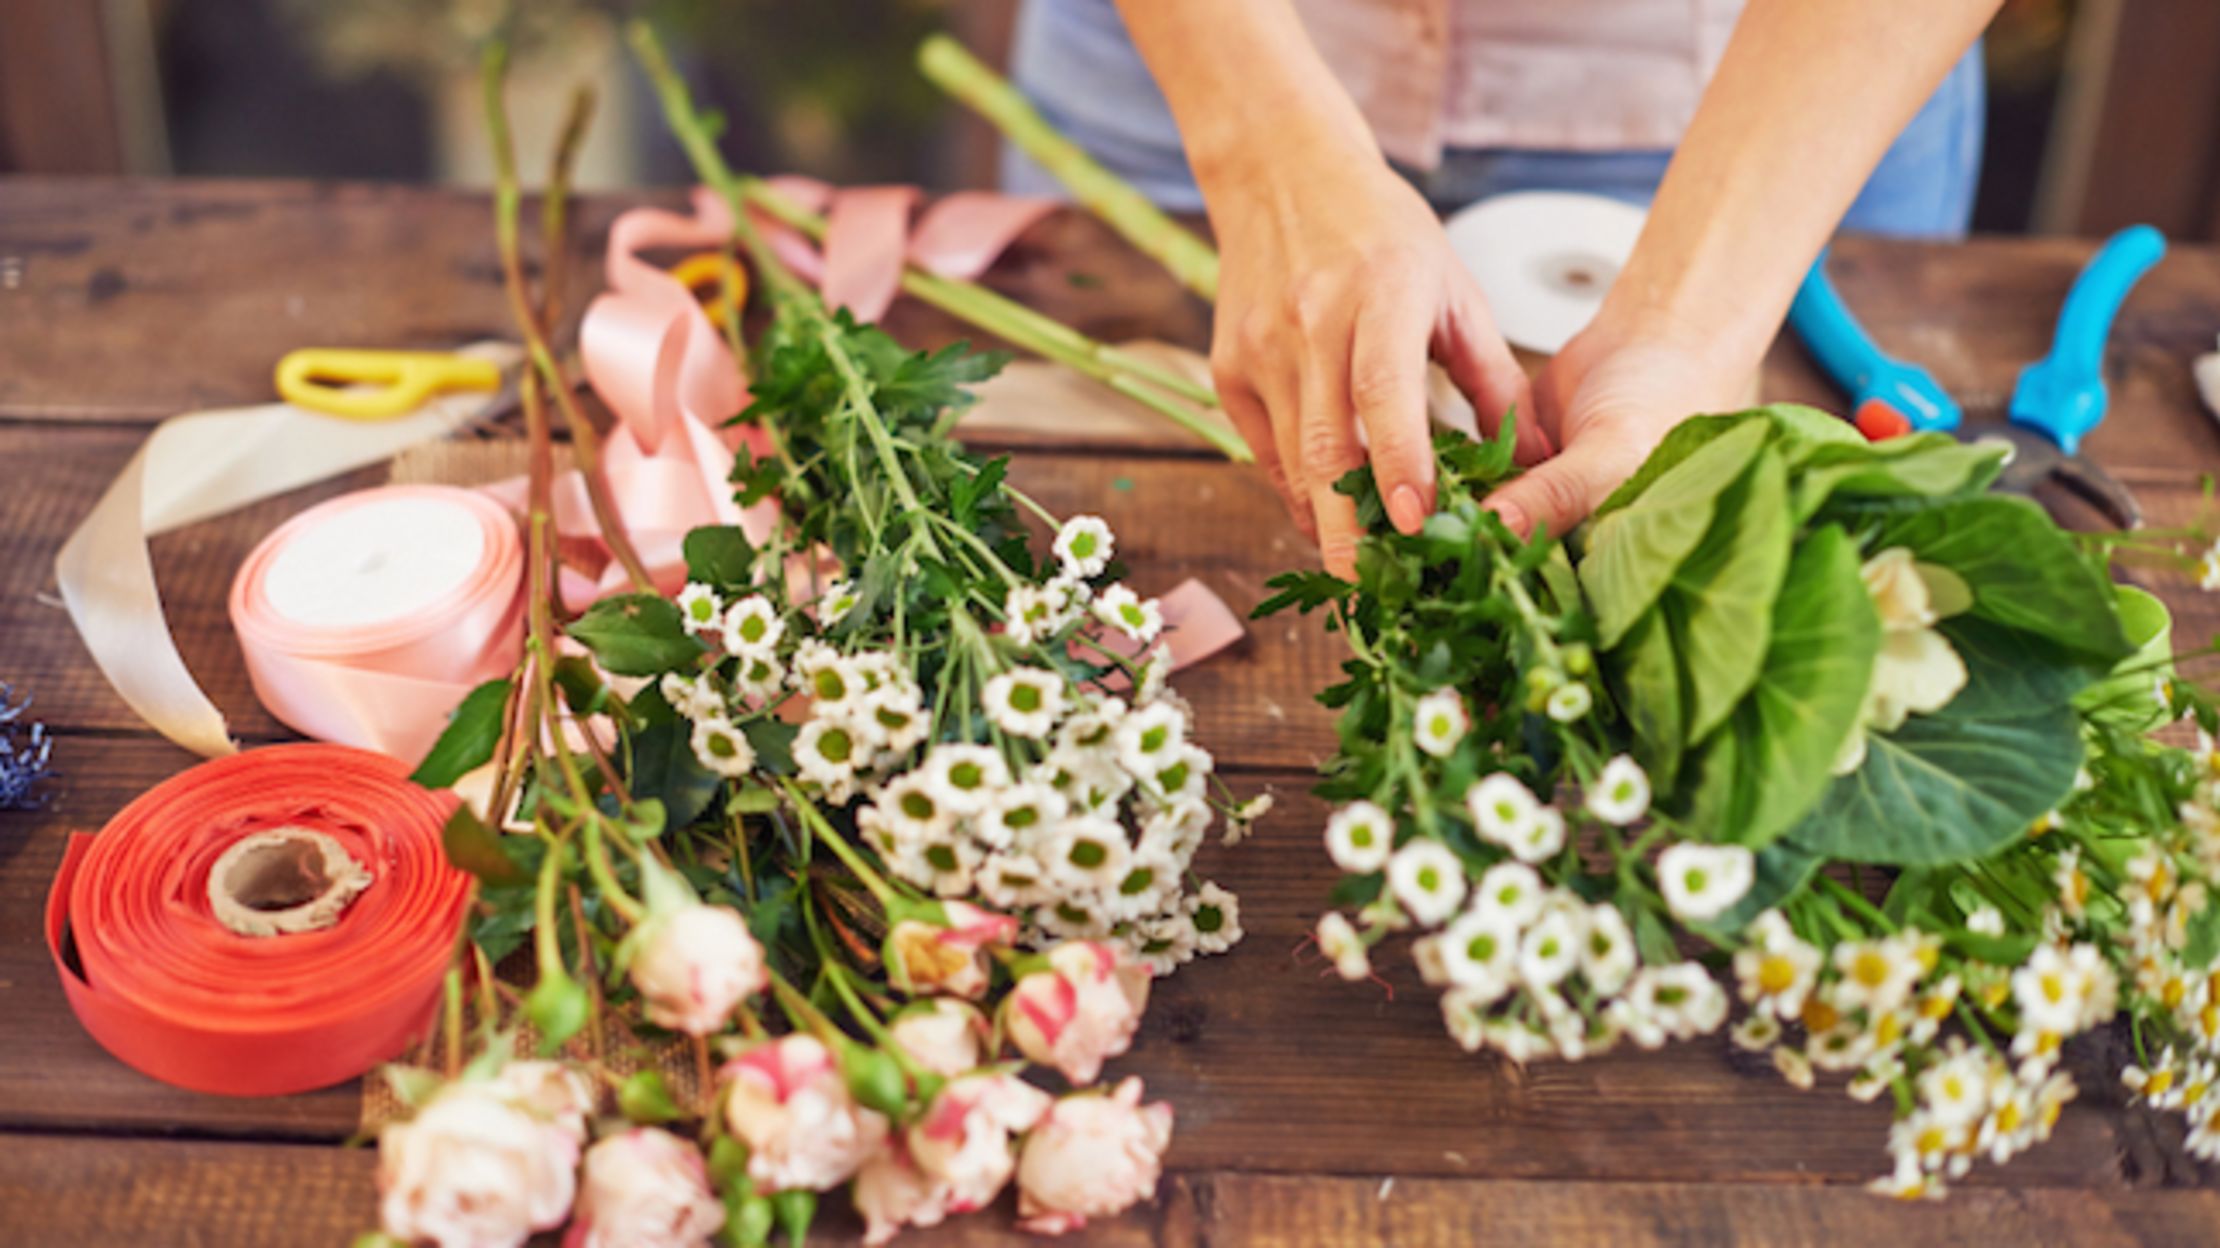 8 Tips To Make Cut Flowers Last Longer Mental Floss